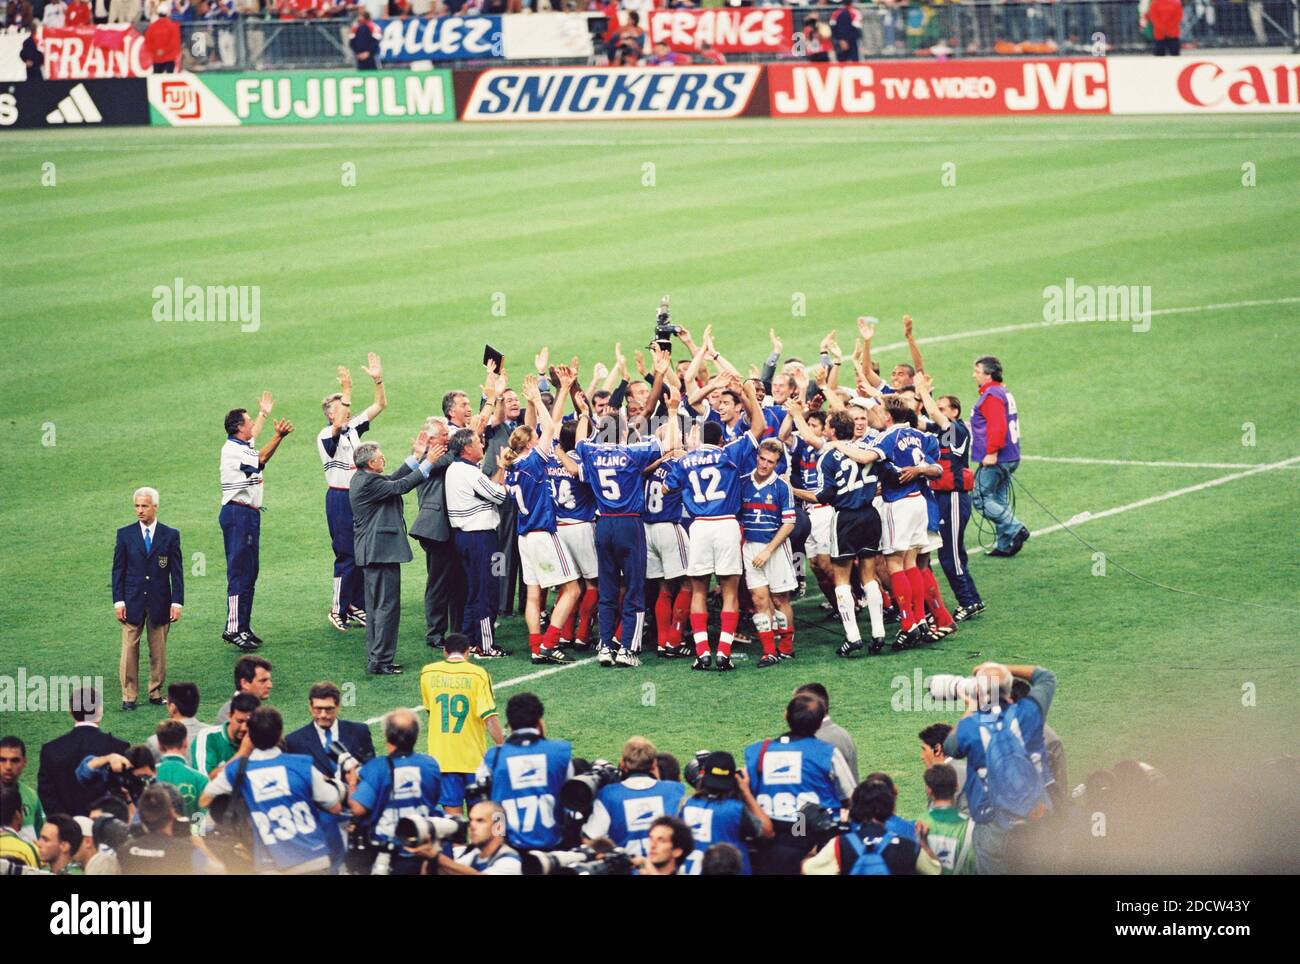 Les coéquipiers de France fêtent après avoir remporté le match final de la coupe du monde de football de la FIFA France contre Brésil au stade de France à Saint-Denis, près de Paris, France, le 12 juillet 1998. La France a gagné 3-0. Photo de Lionel Hahn/ABACAPRESS.COM Banque D'Images